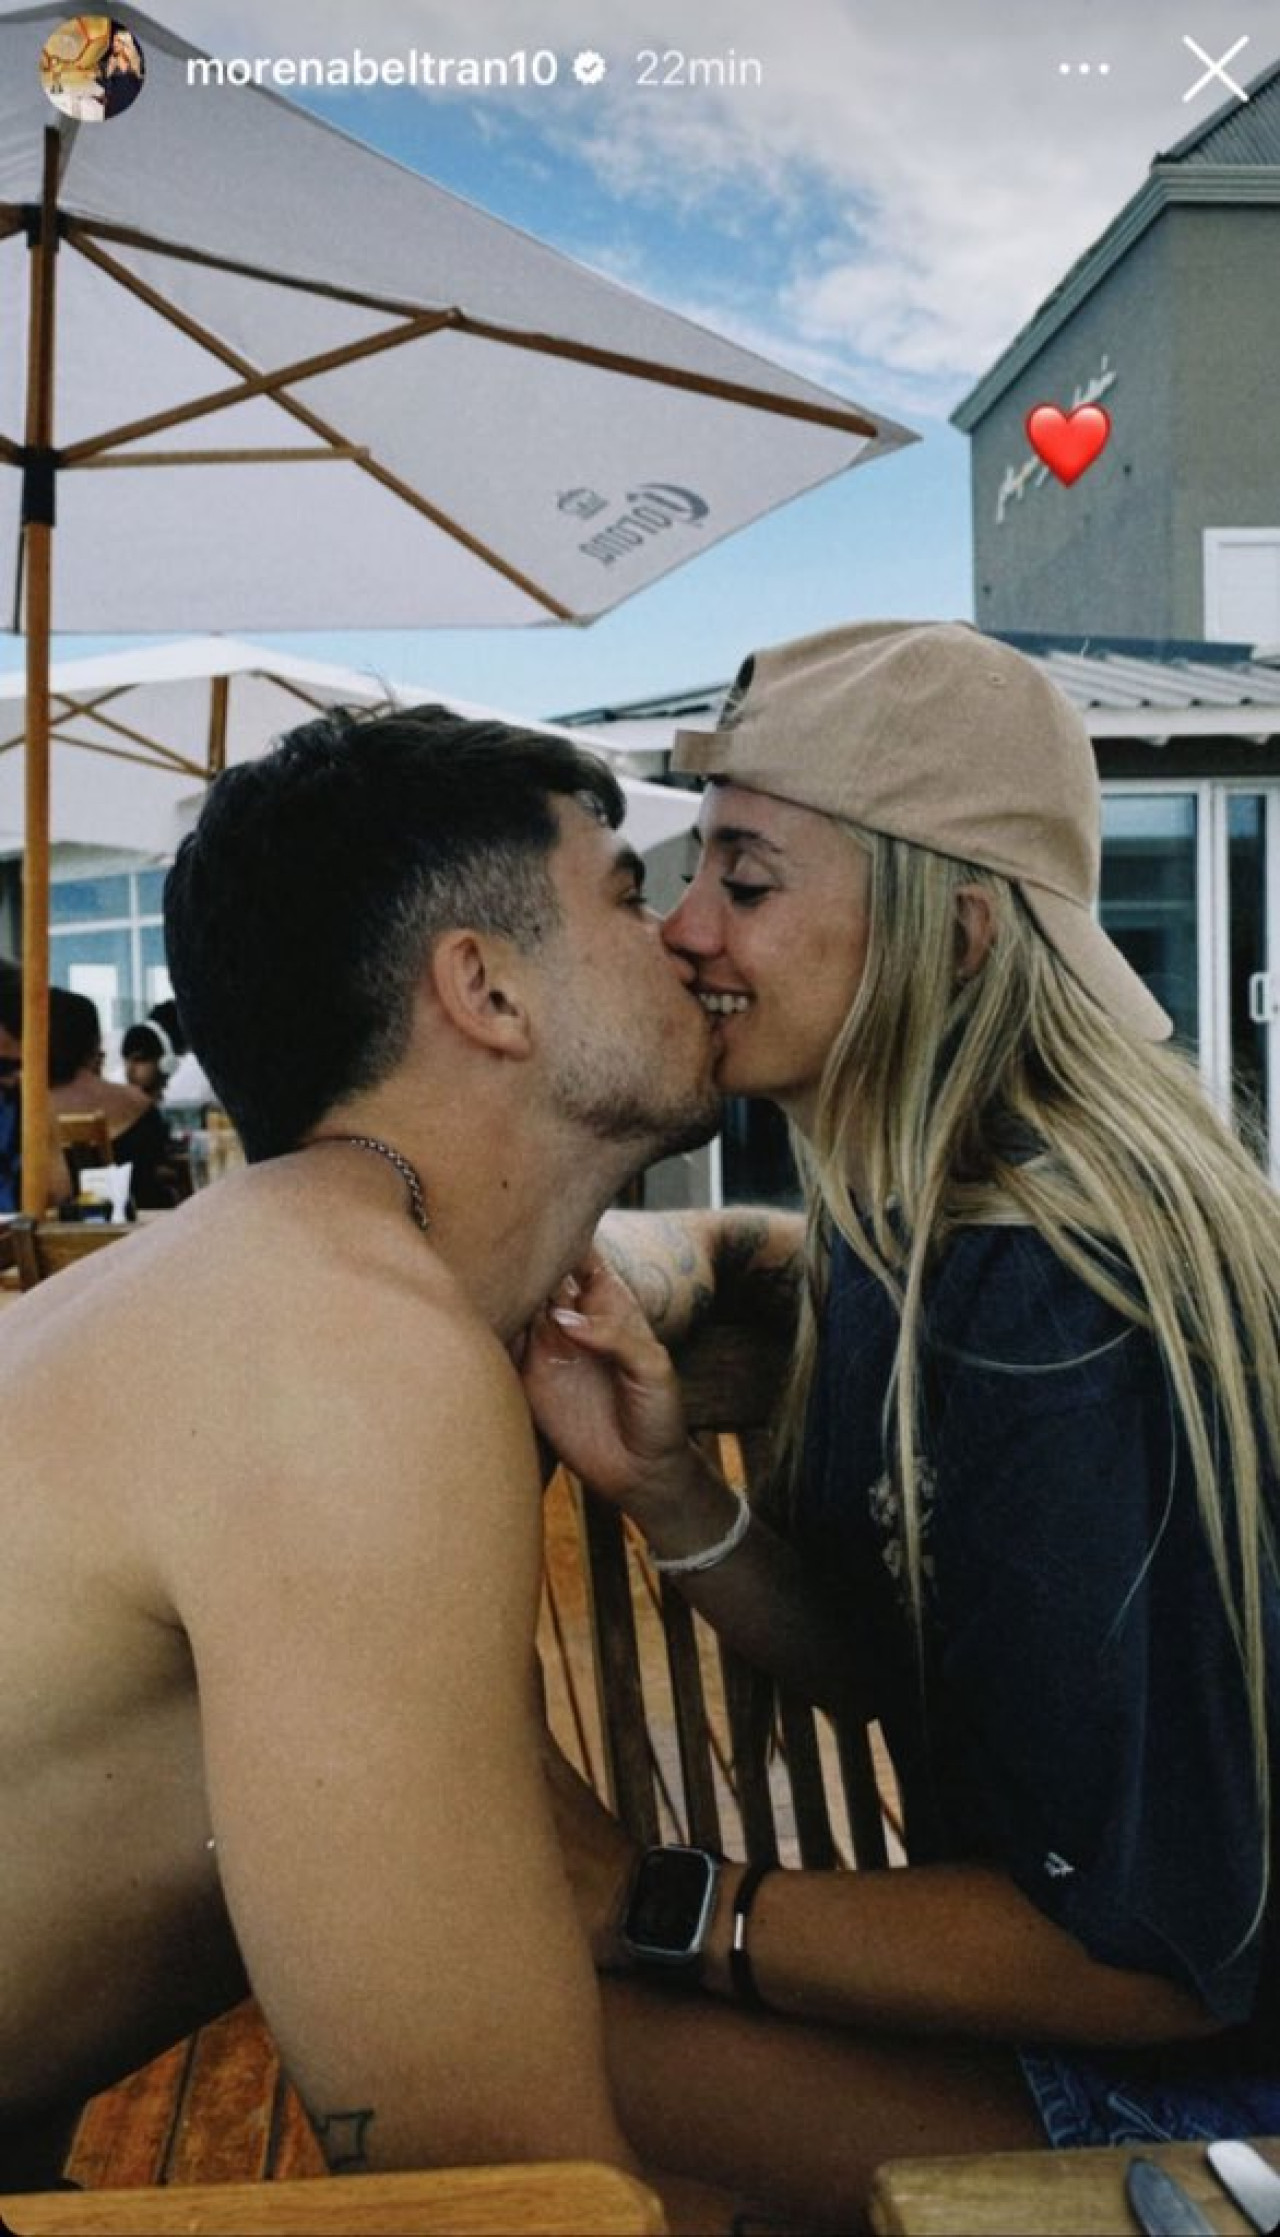 Incipiente amor entre Beltrán y Blondel. Foto: Instagram @morenabeltran10